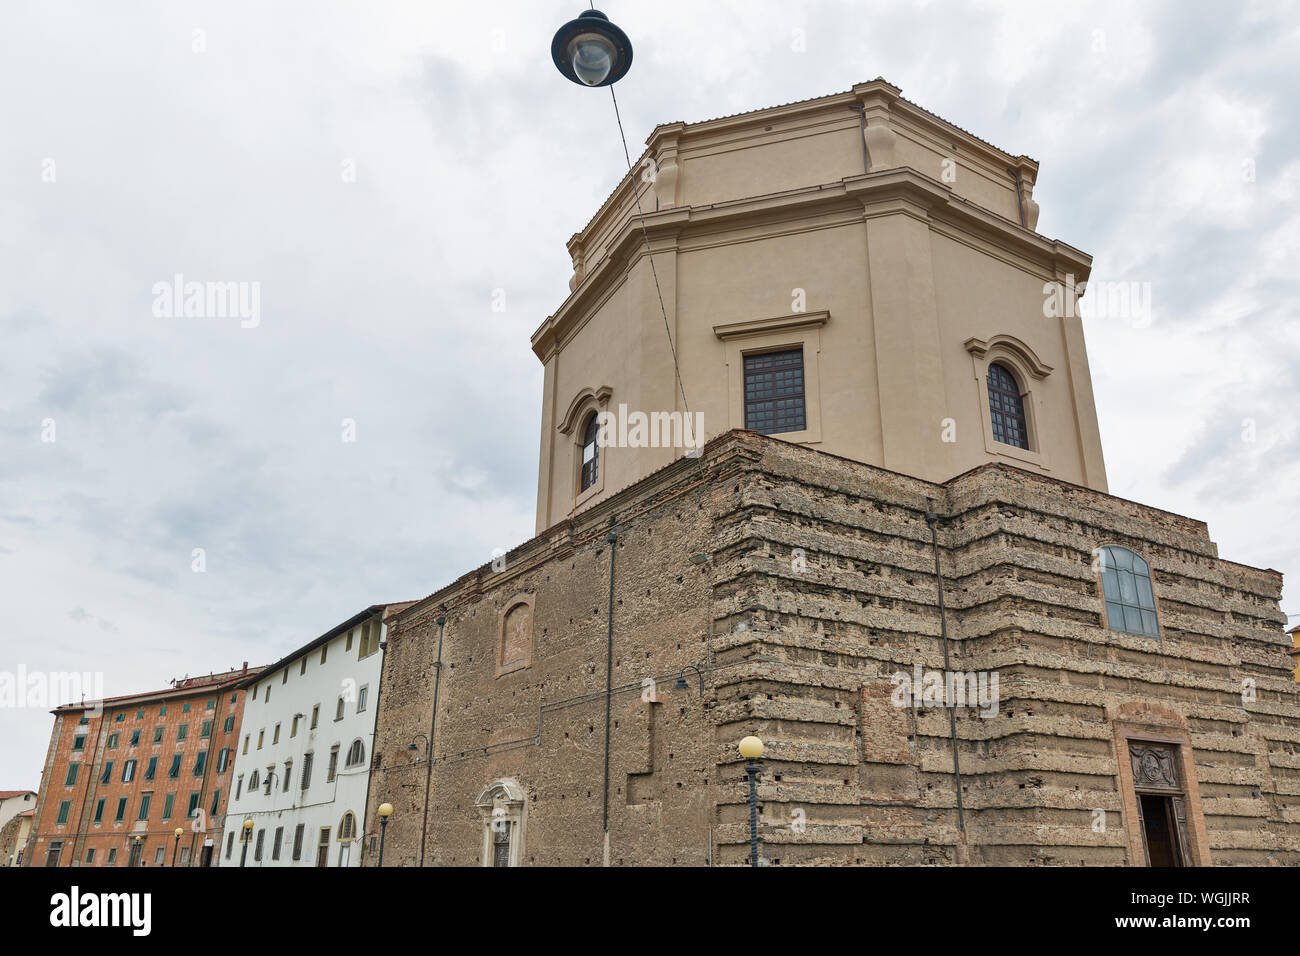 Santa Caterina chiesa a Livorno, Italia. Livorno è stata fondata nel 1017 come una delle piccole fortezze costiere la protezione di Pisa. Foto Stock